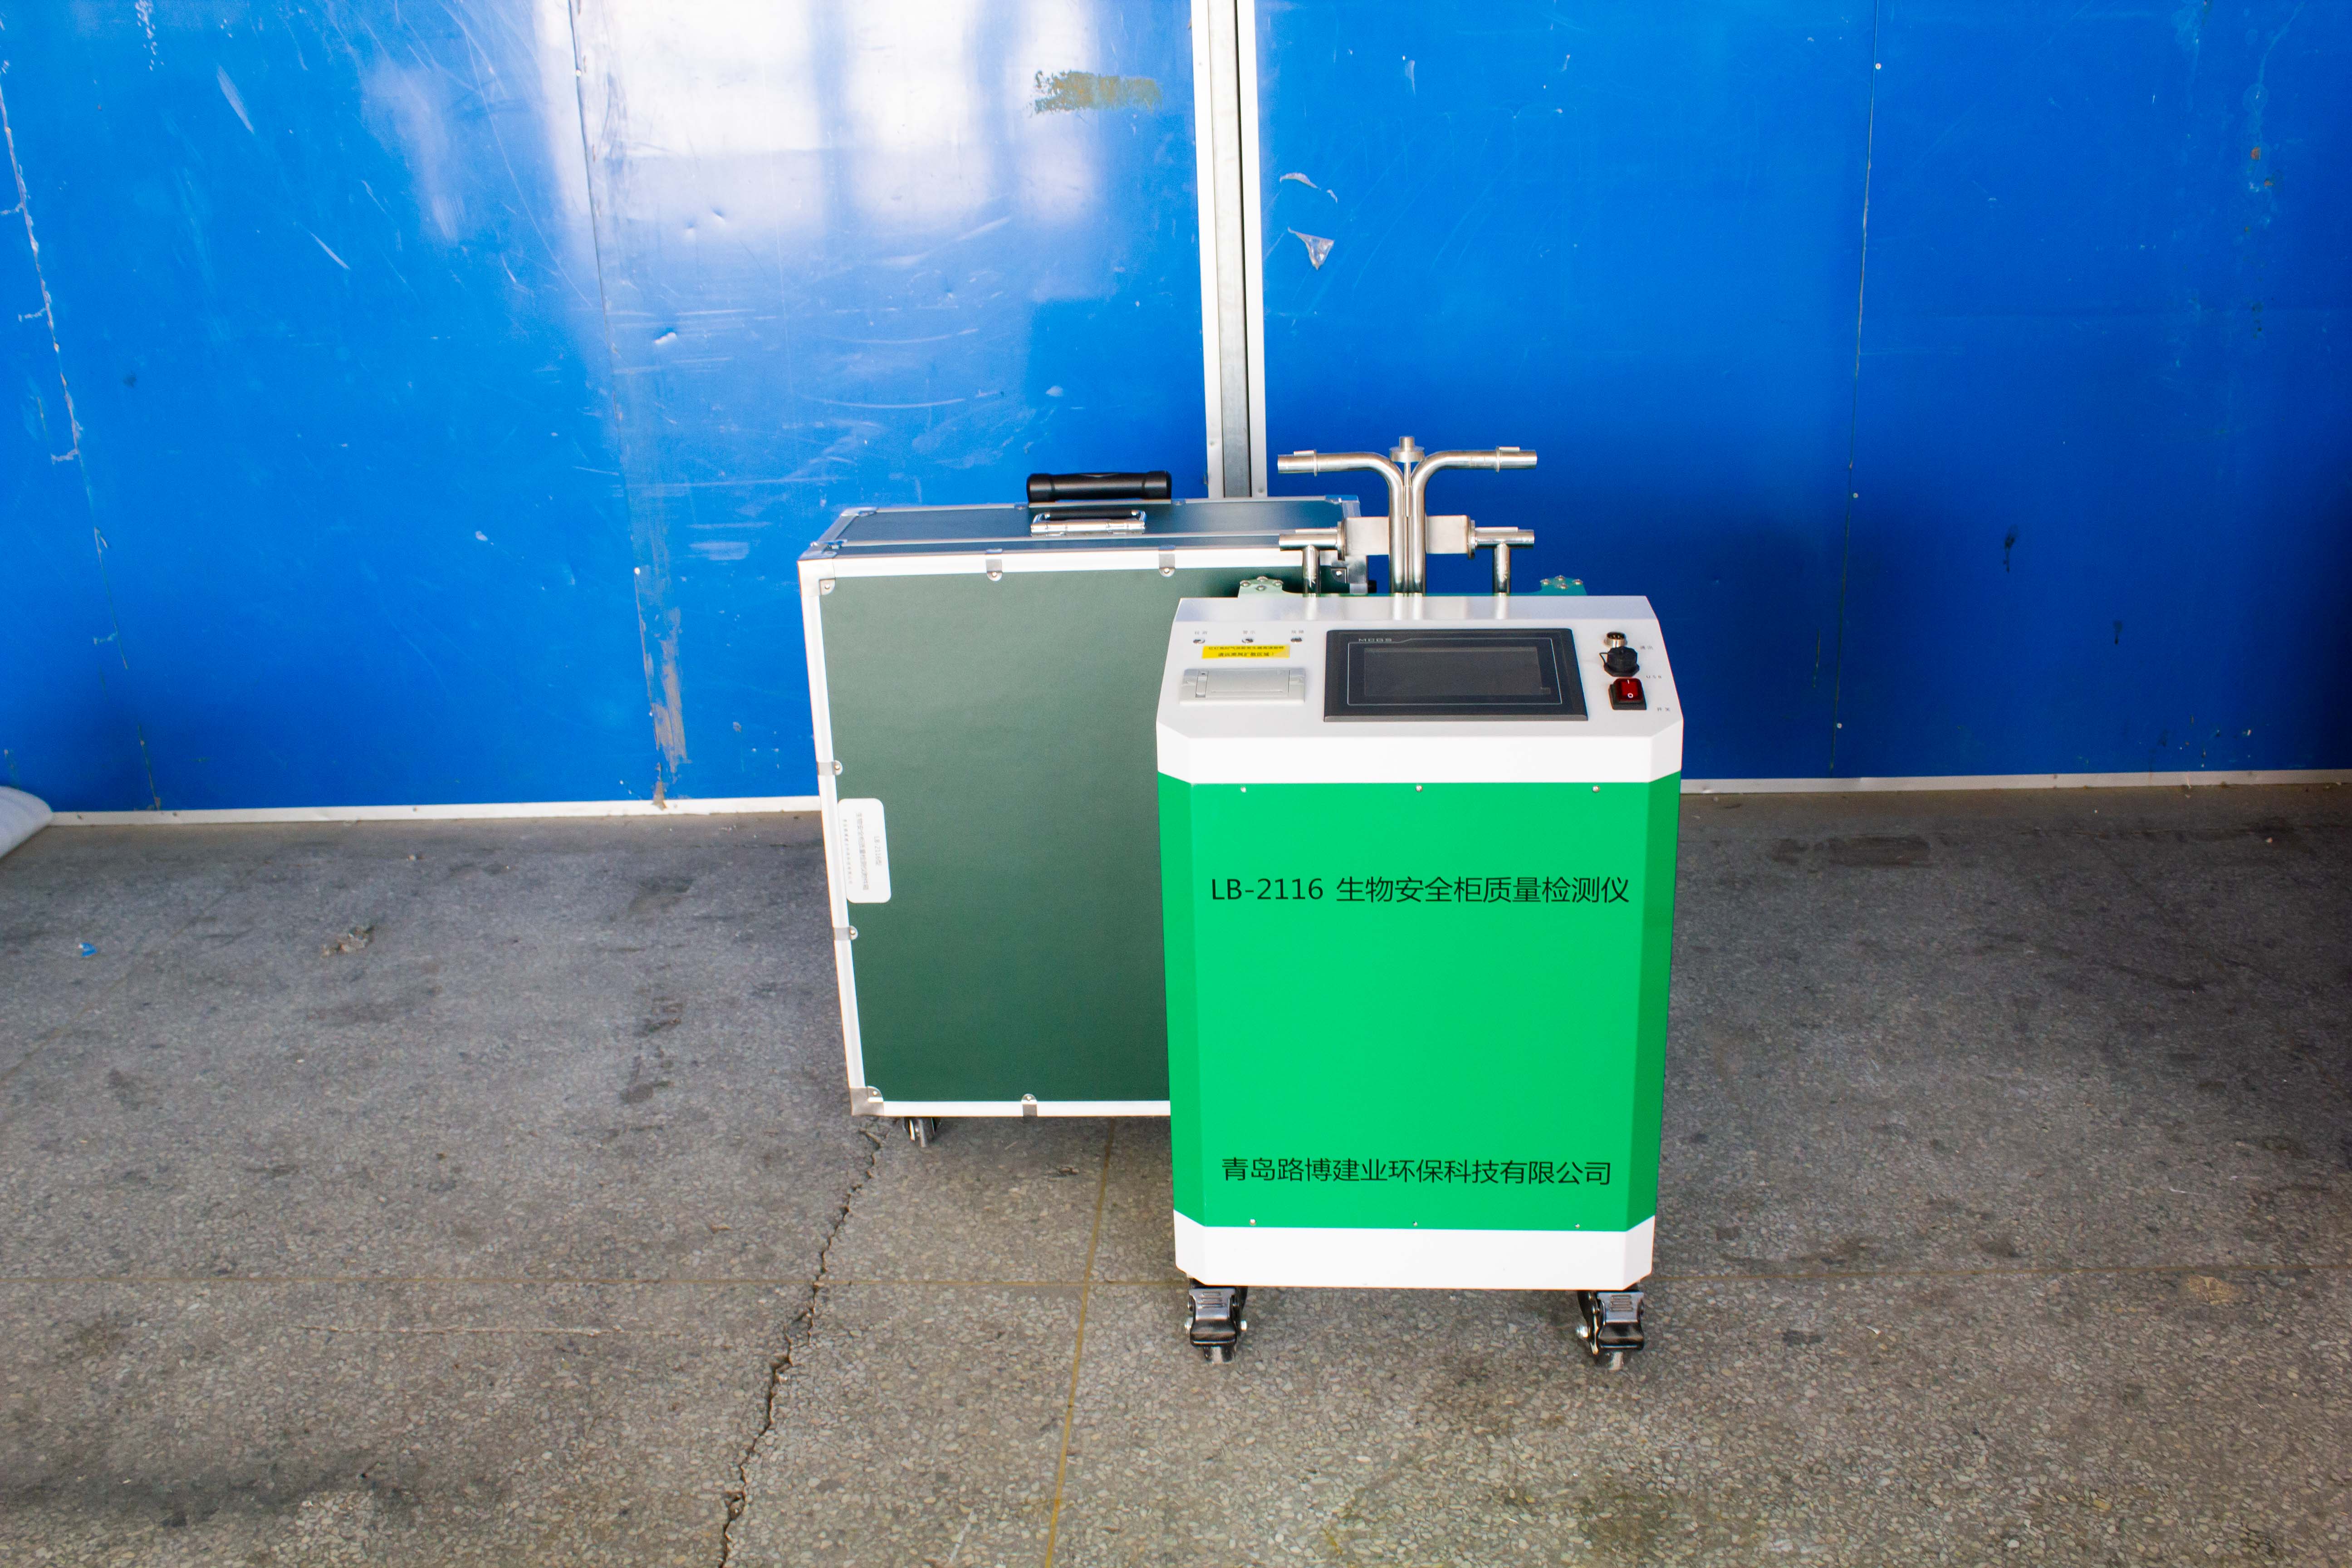 路博 LB-2116型生物柜质量检测仪